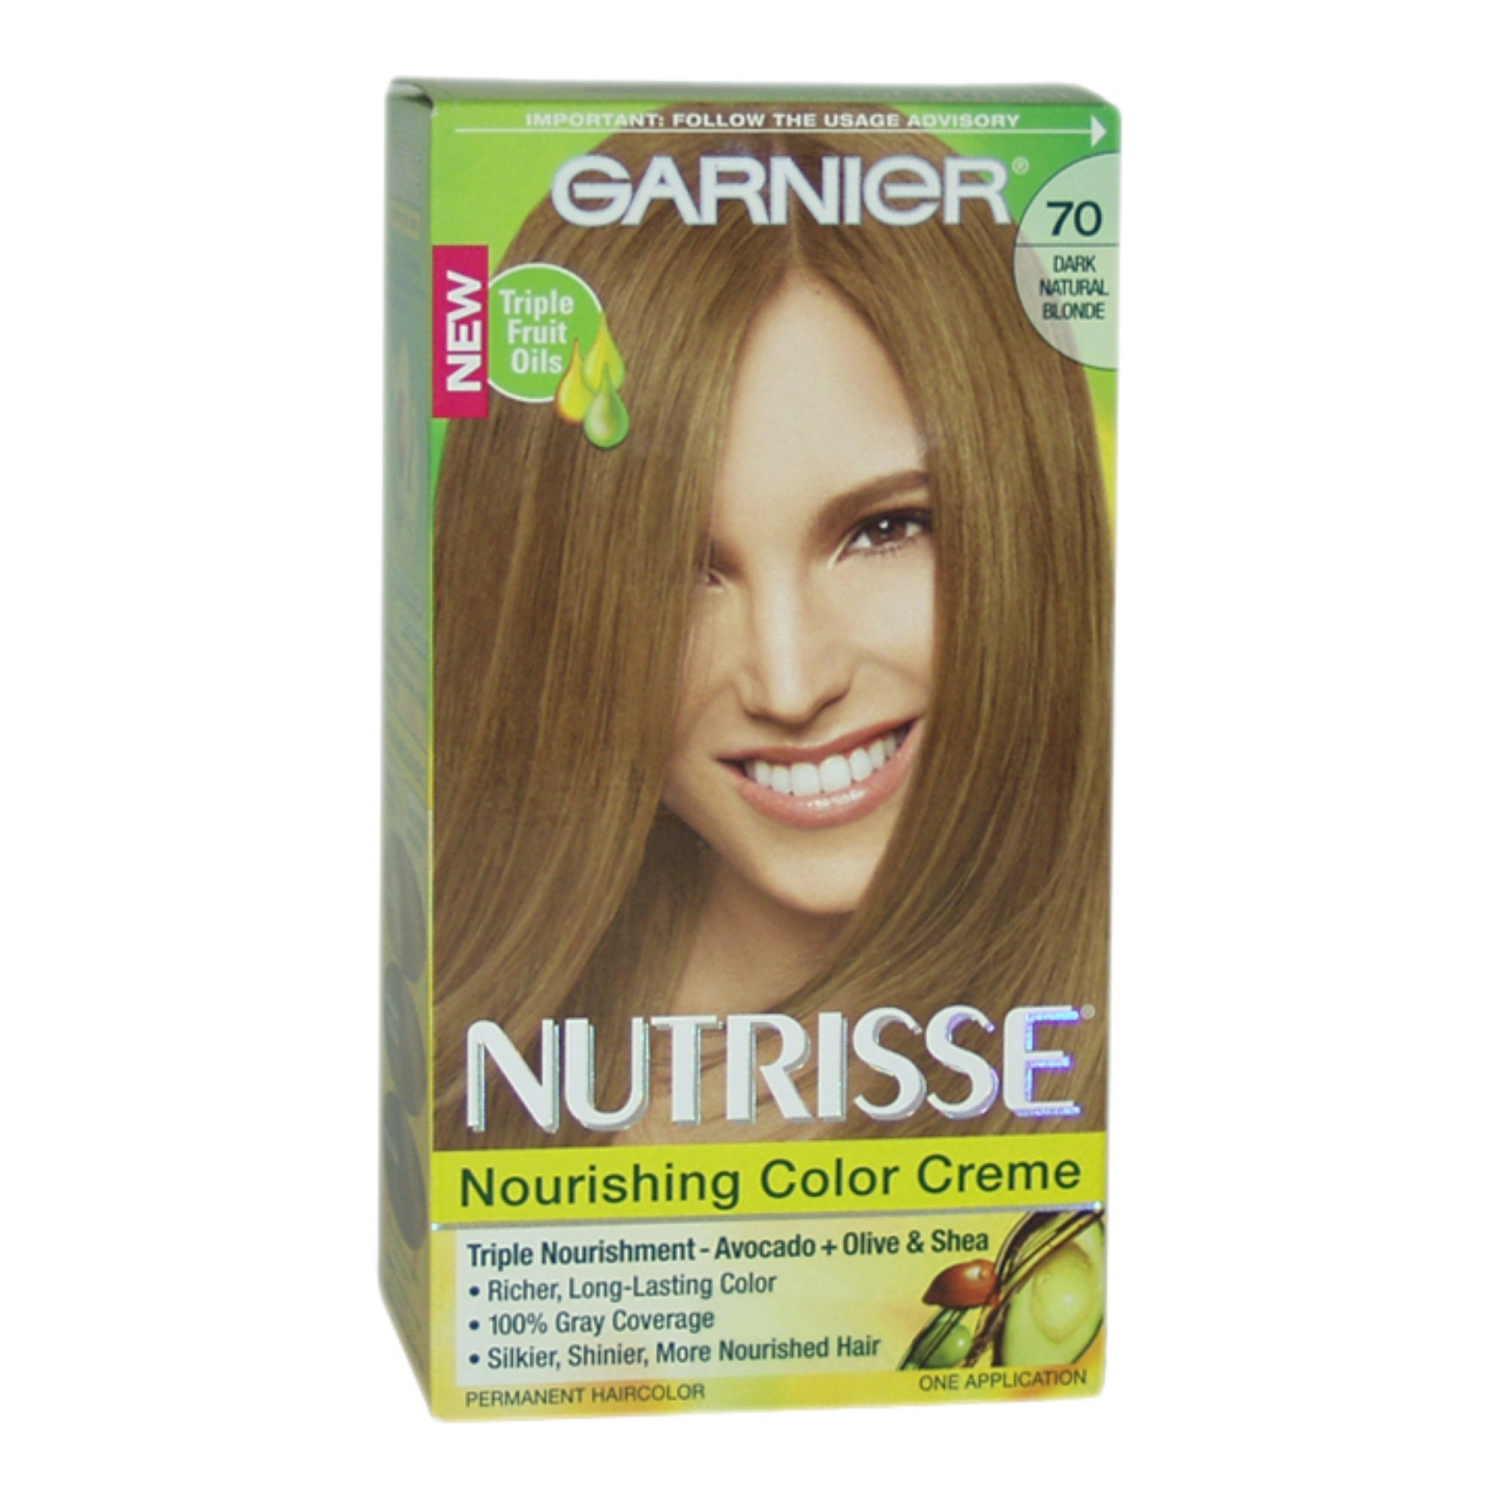 Nutrisse Nourishing Color Creme # 70 Dark Natural Blonde by Garnier for Unisex - 1 Application Hair Color